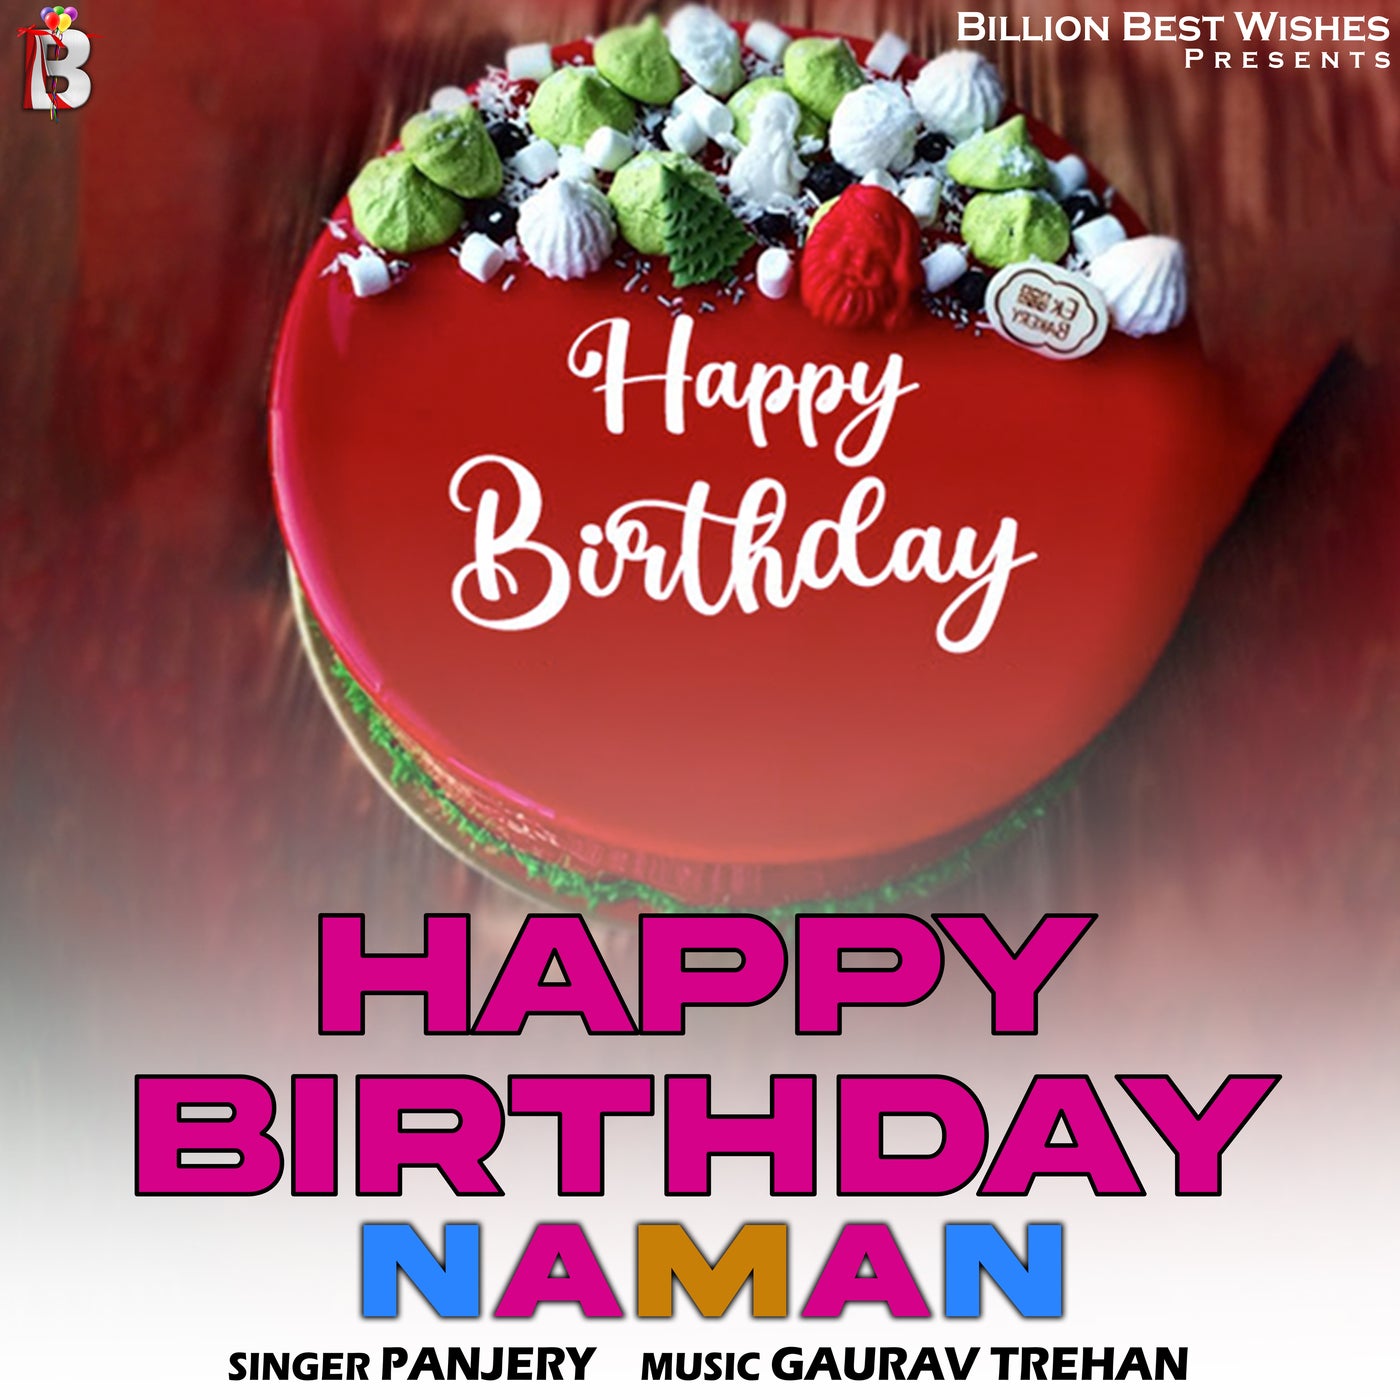 100+ HD Happy Birthday Tanisha Cake Images And Shayari